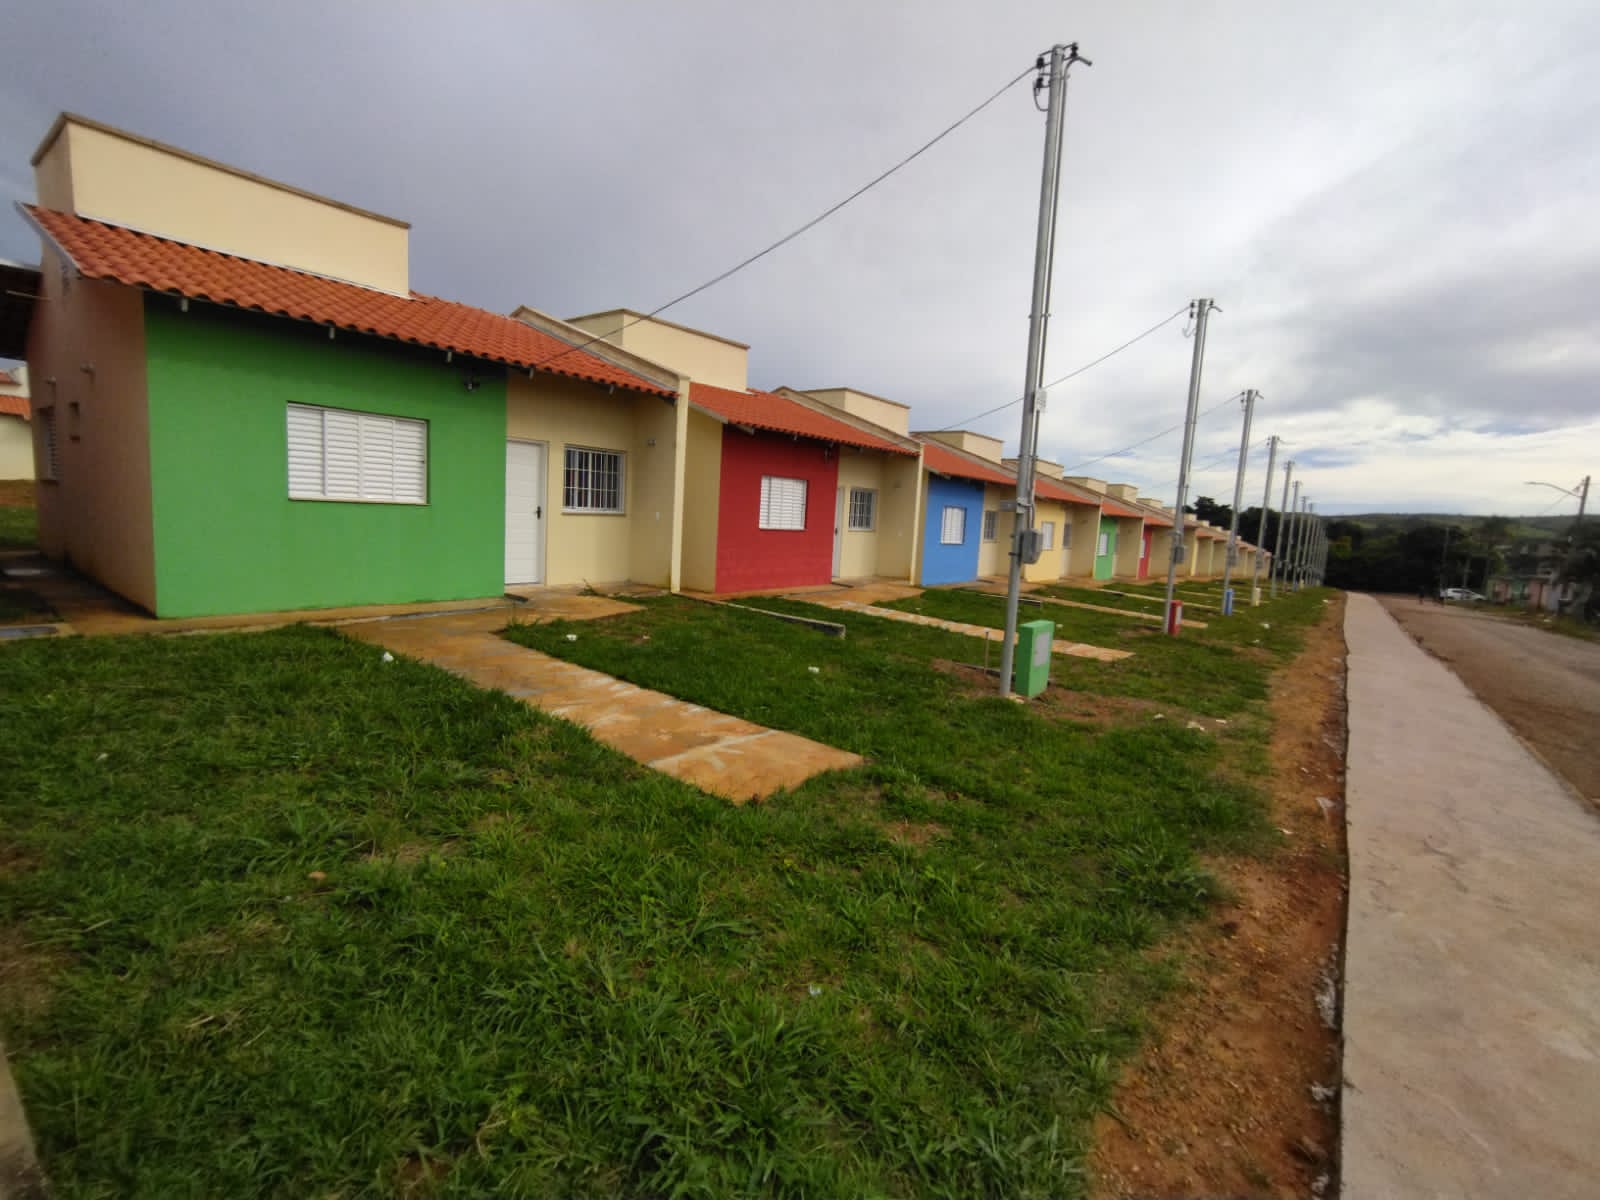 Governo de Goiás sorteia casas a custo zero em Santo Antônio do Descoberto